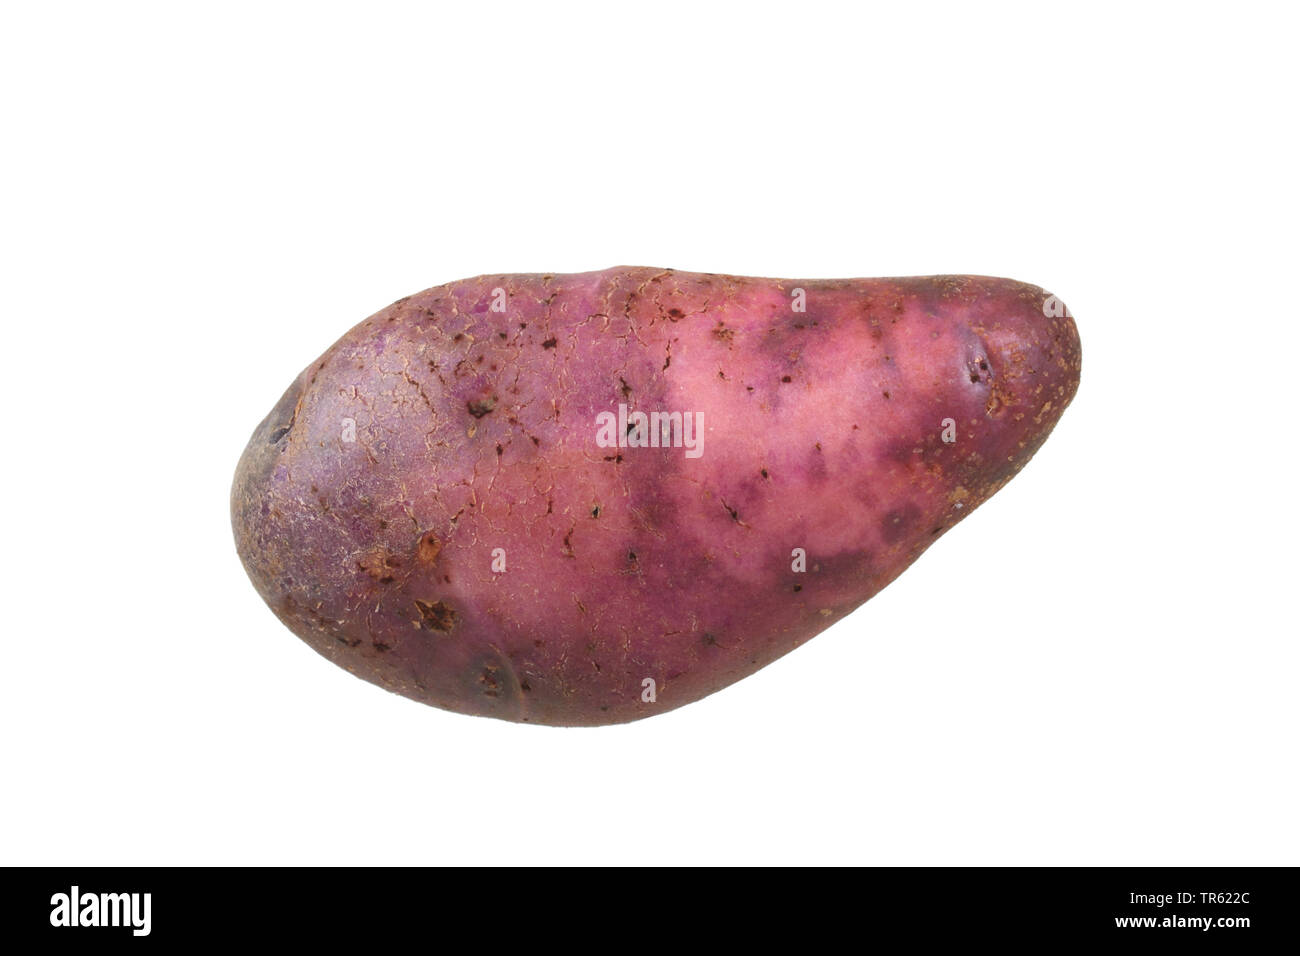 Kartoffel (Solanum tuberosum Lila gemustert Sämling), Kartoffel der Sorte Purple Eyed Sämling, Ausschnitt Stockfoto